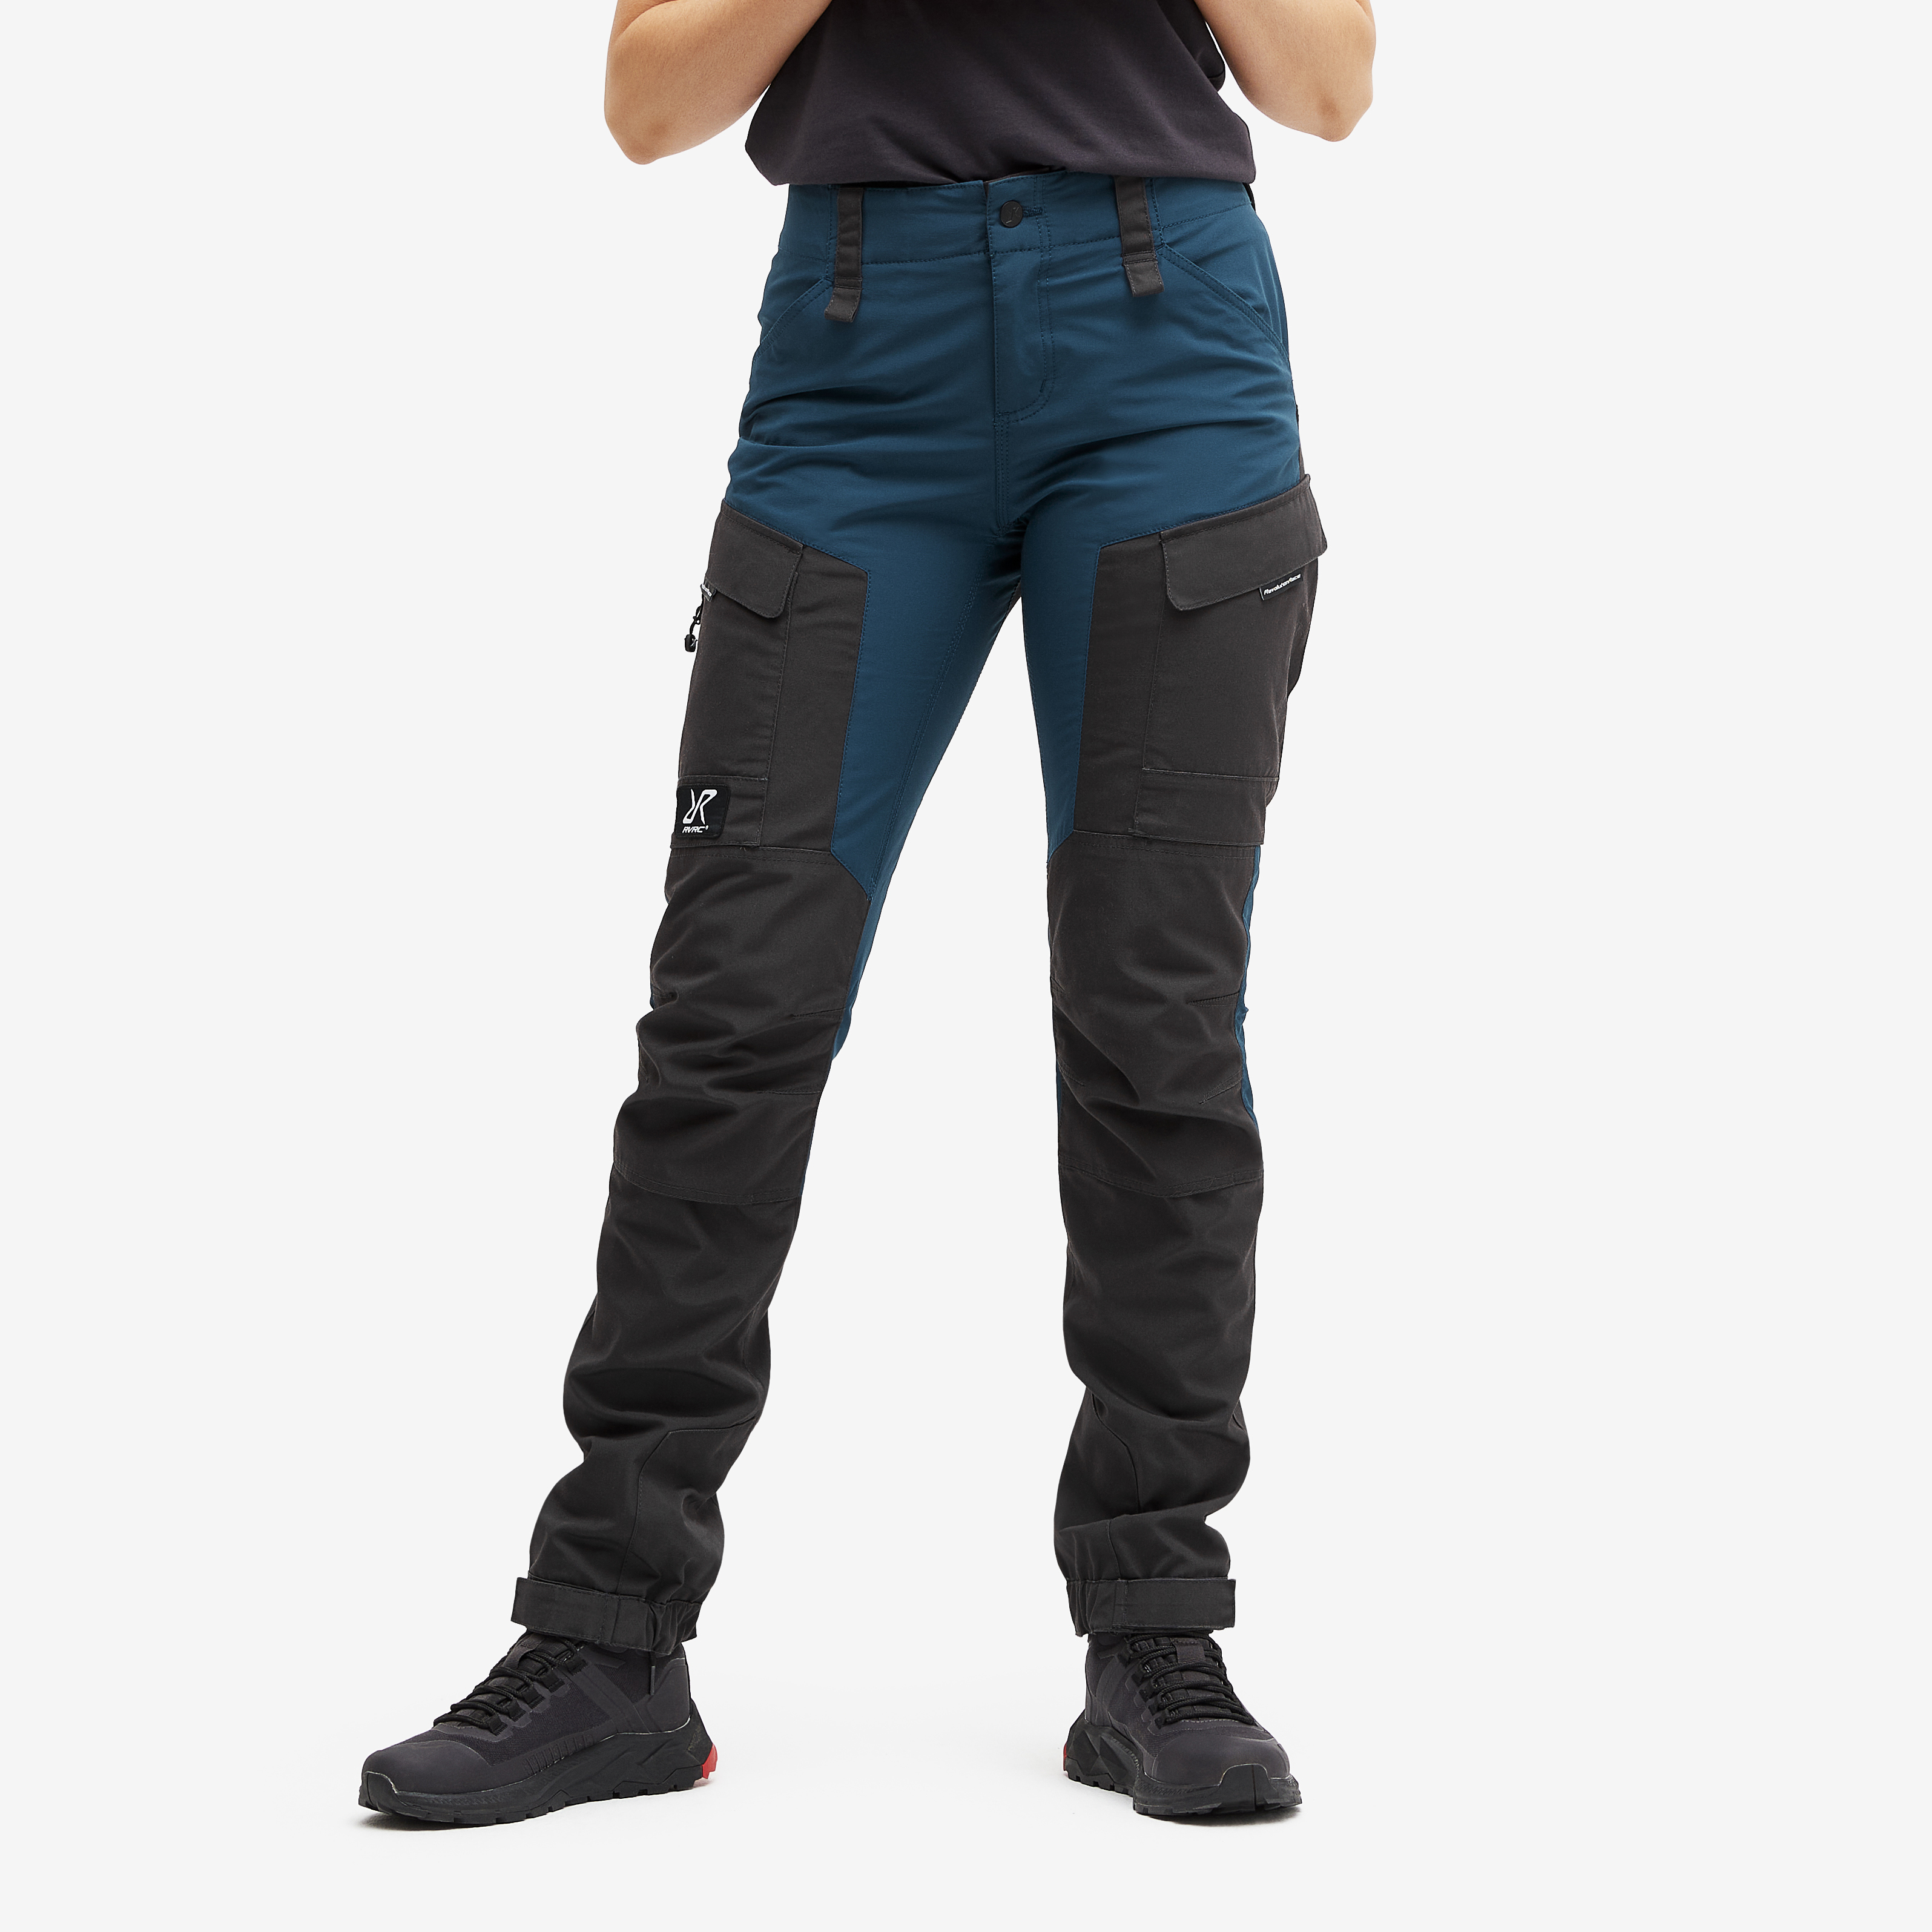 RVRC GP outdoor bukser for kvinder i mørkeblå